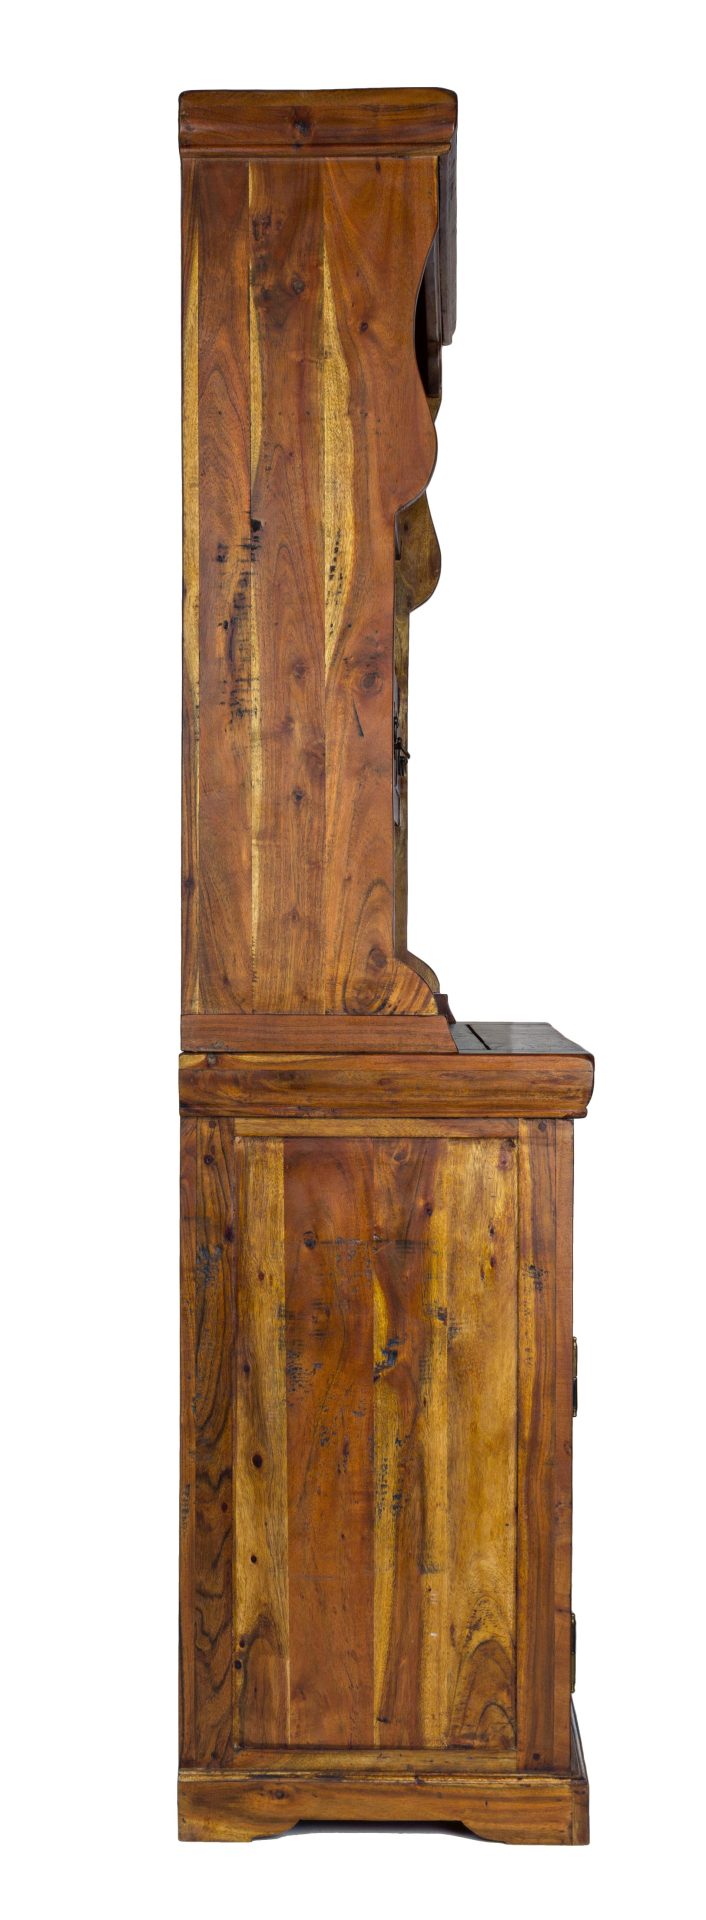 Der Schrank Chateaux überzeugt mit seinem klassischen Design. Gefertigt wurde er aus Akazien-Holz, welches einen natürlichen Farbton besitzt. Das Gestell ist auch aus Akazien-Holz. Der Schrank verfügt über zwei Türen und fünf Schubladen. Die Höhe beträgt 